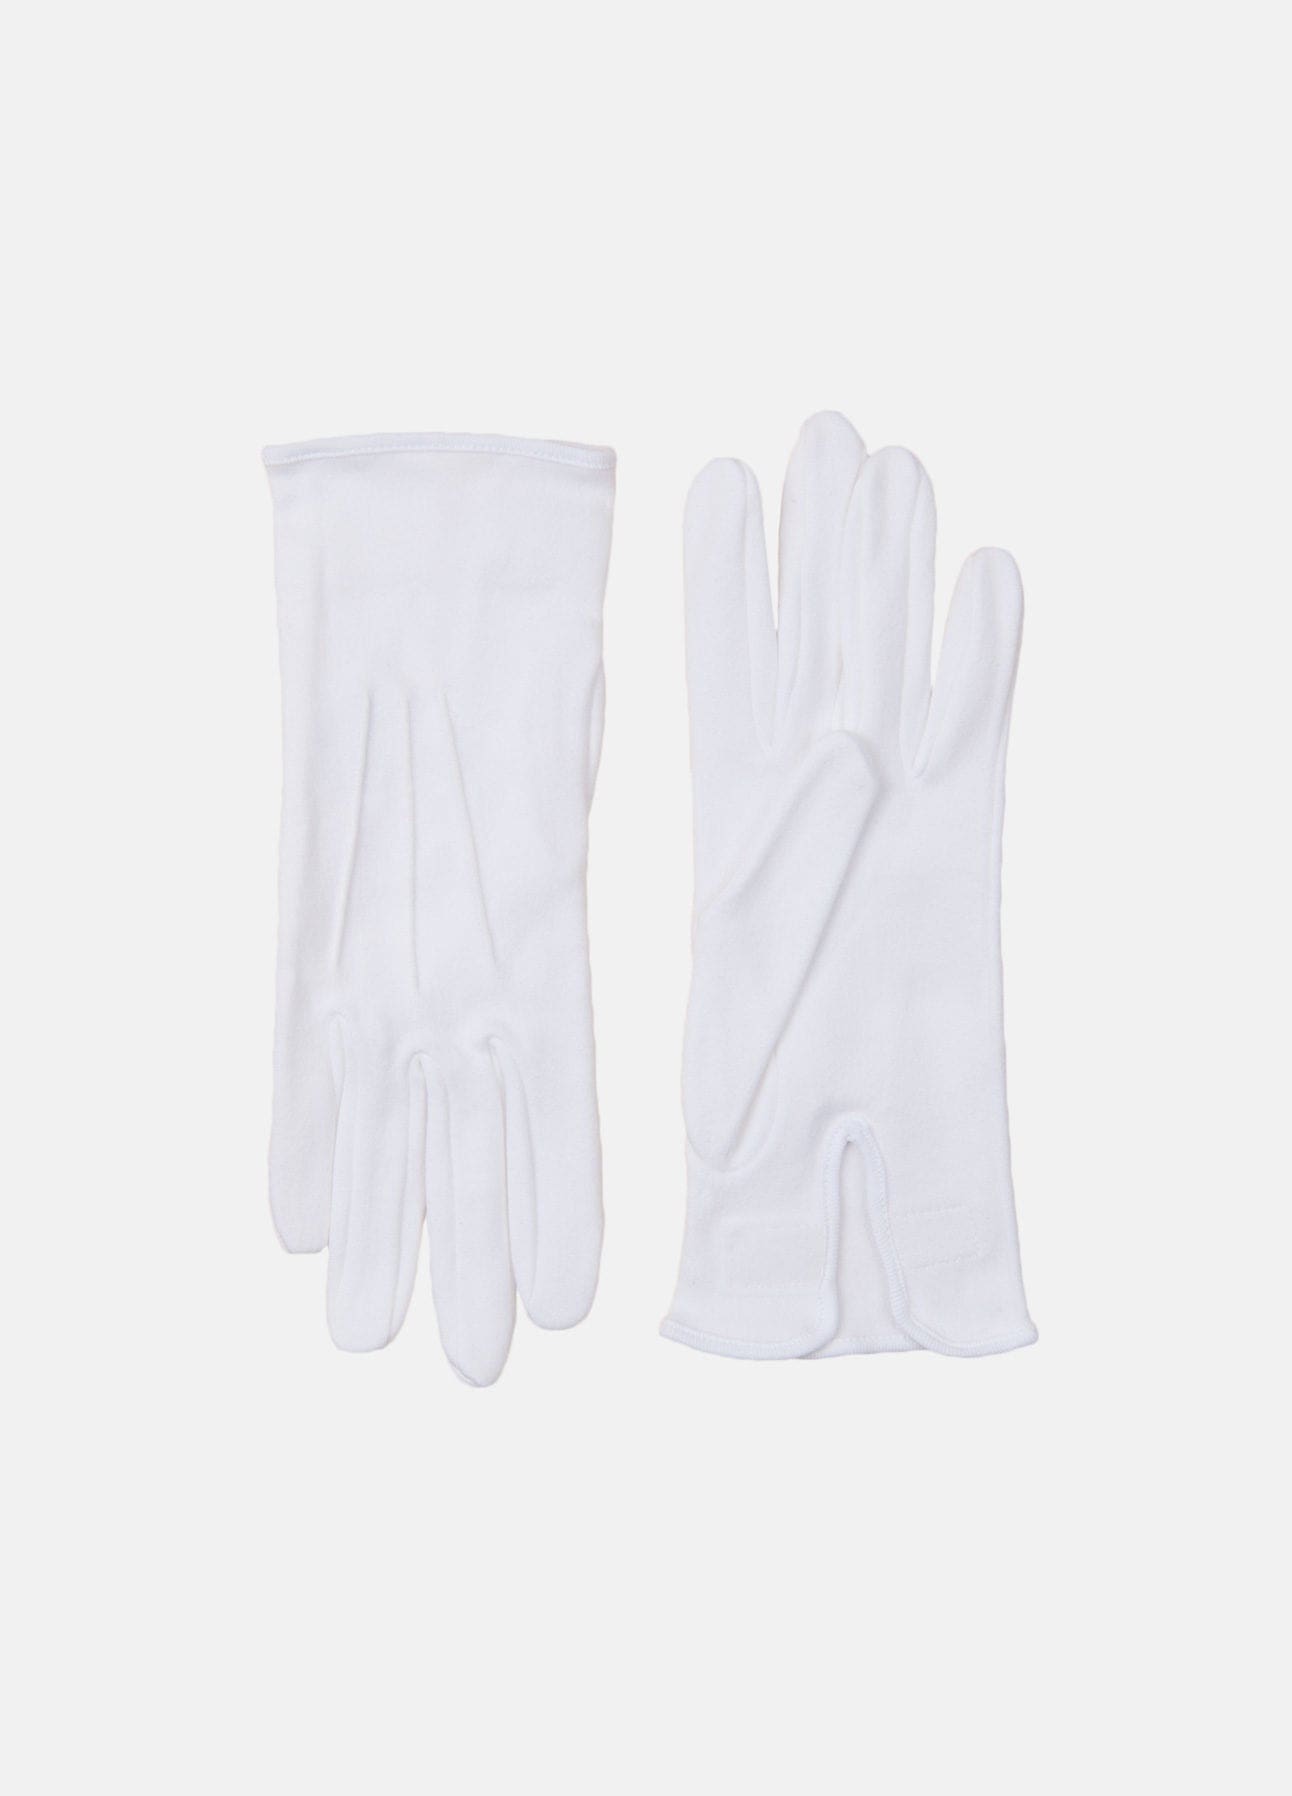 Hvide handsker Troelstrup | Køb online hos